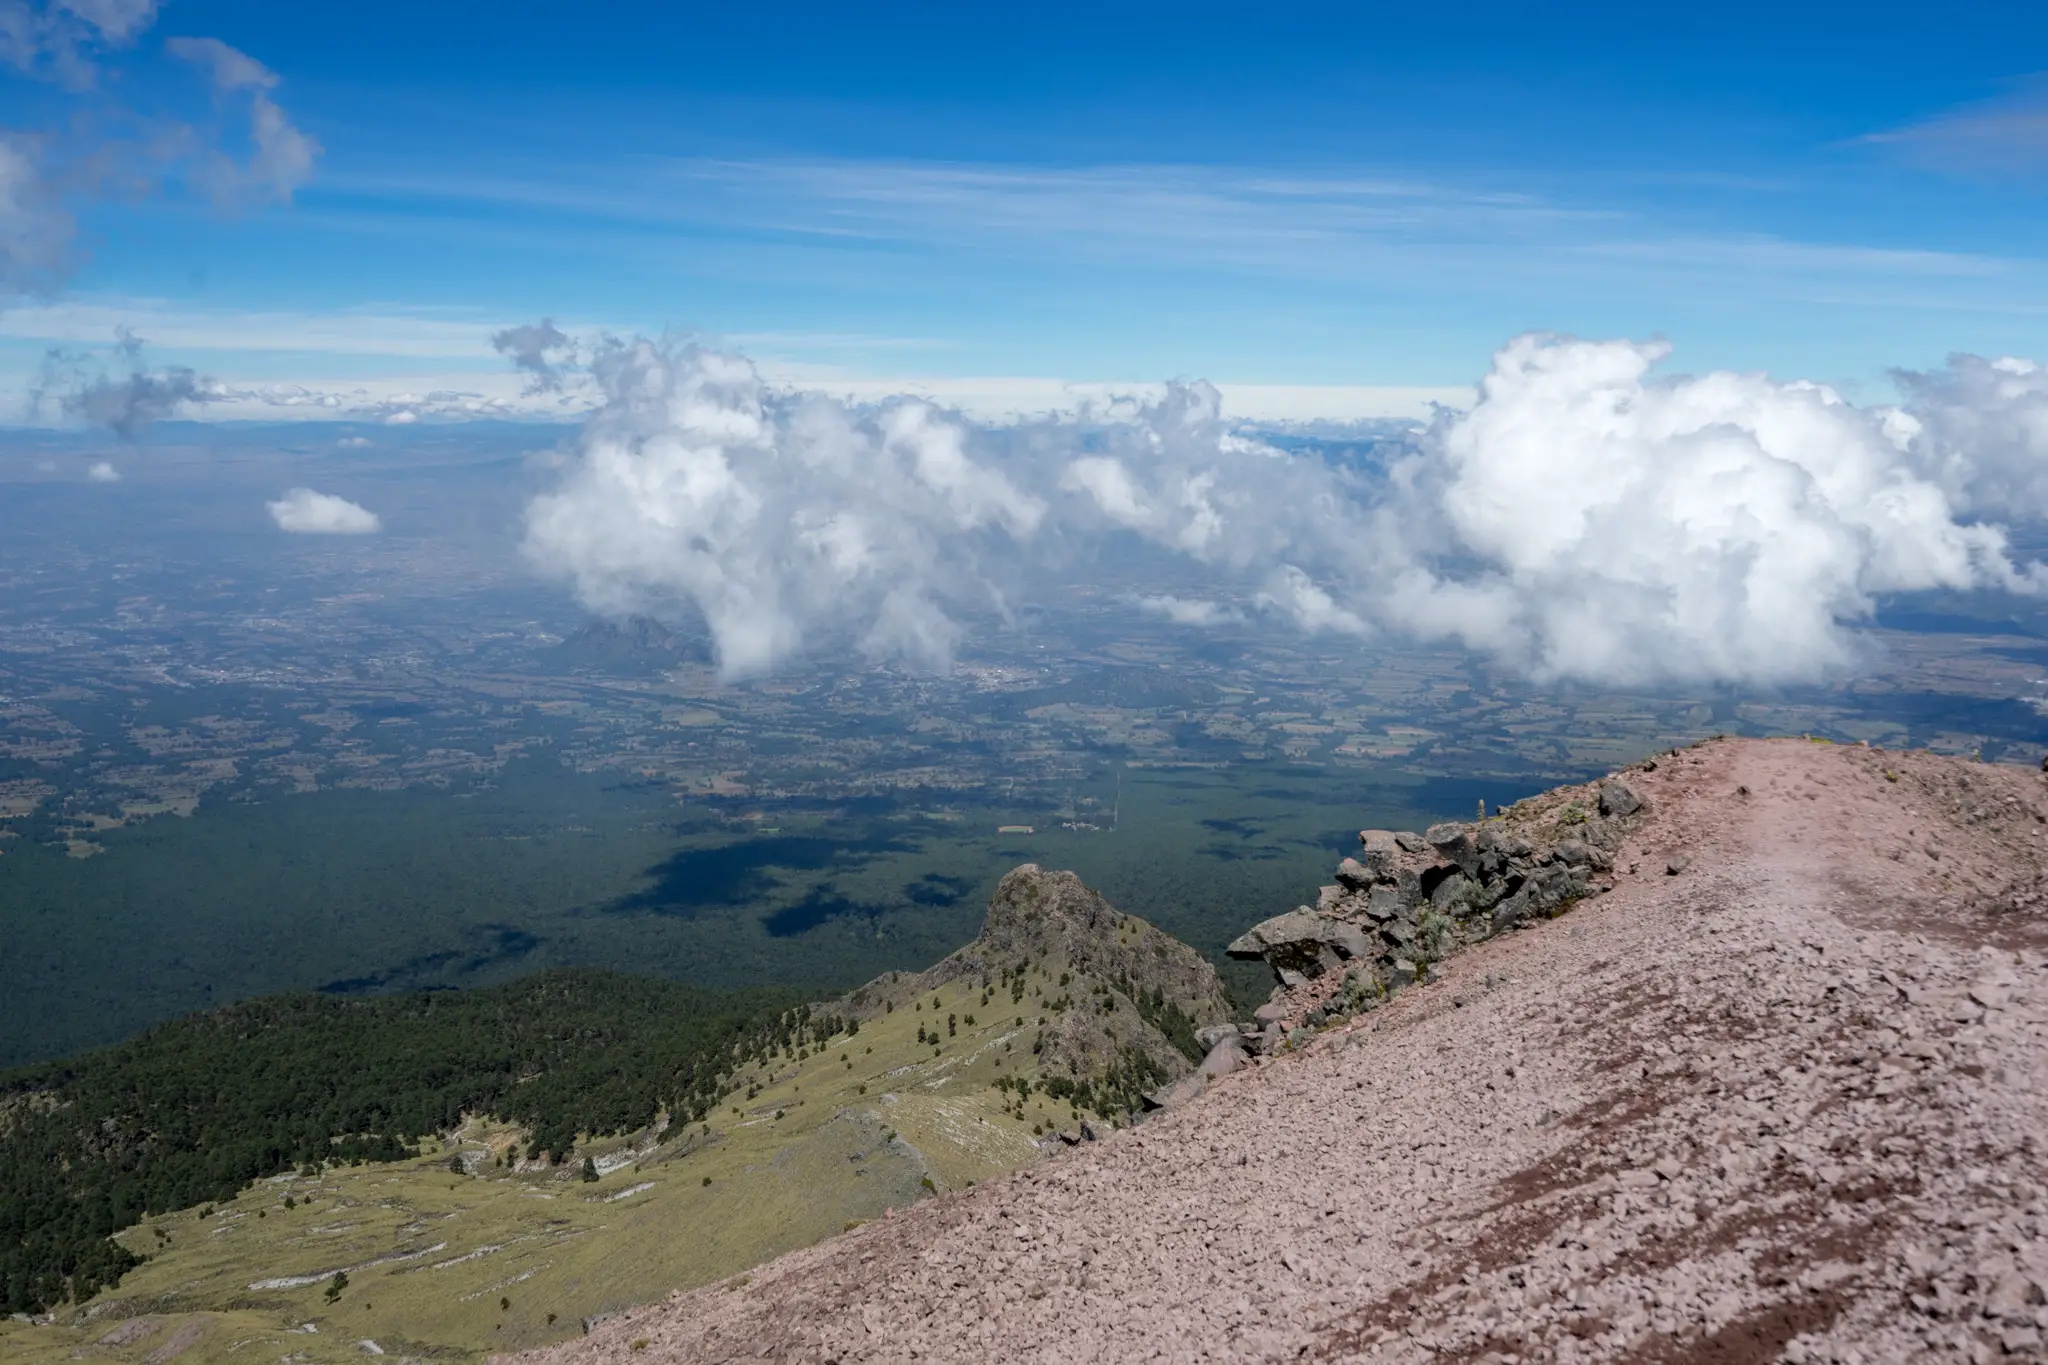 Acclimatizing on La Malinche near Pico de Orizaba